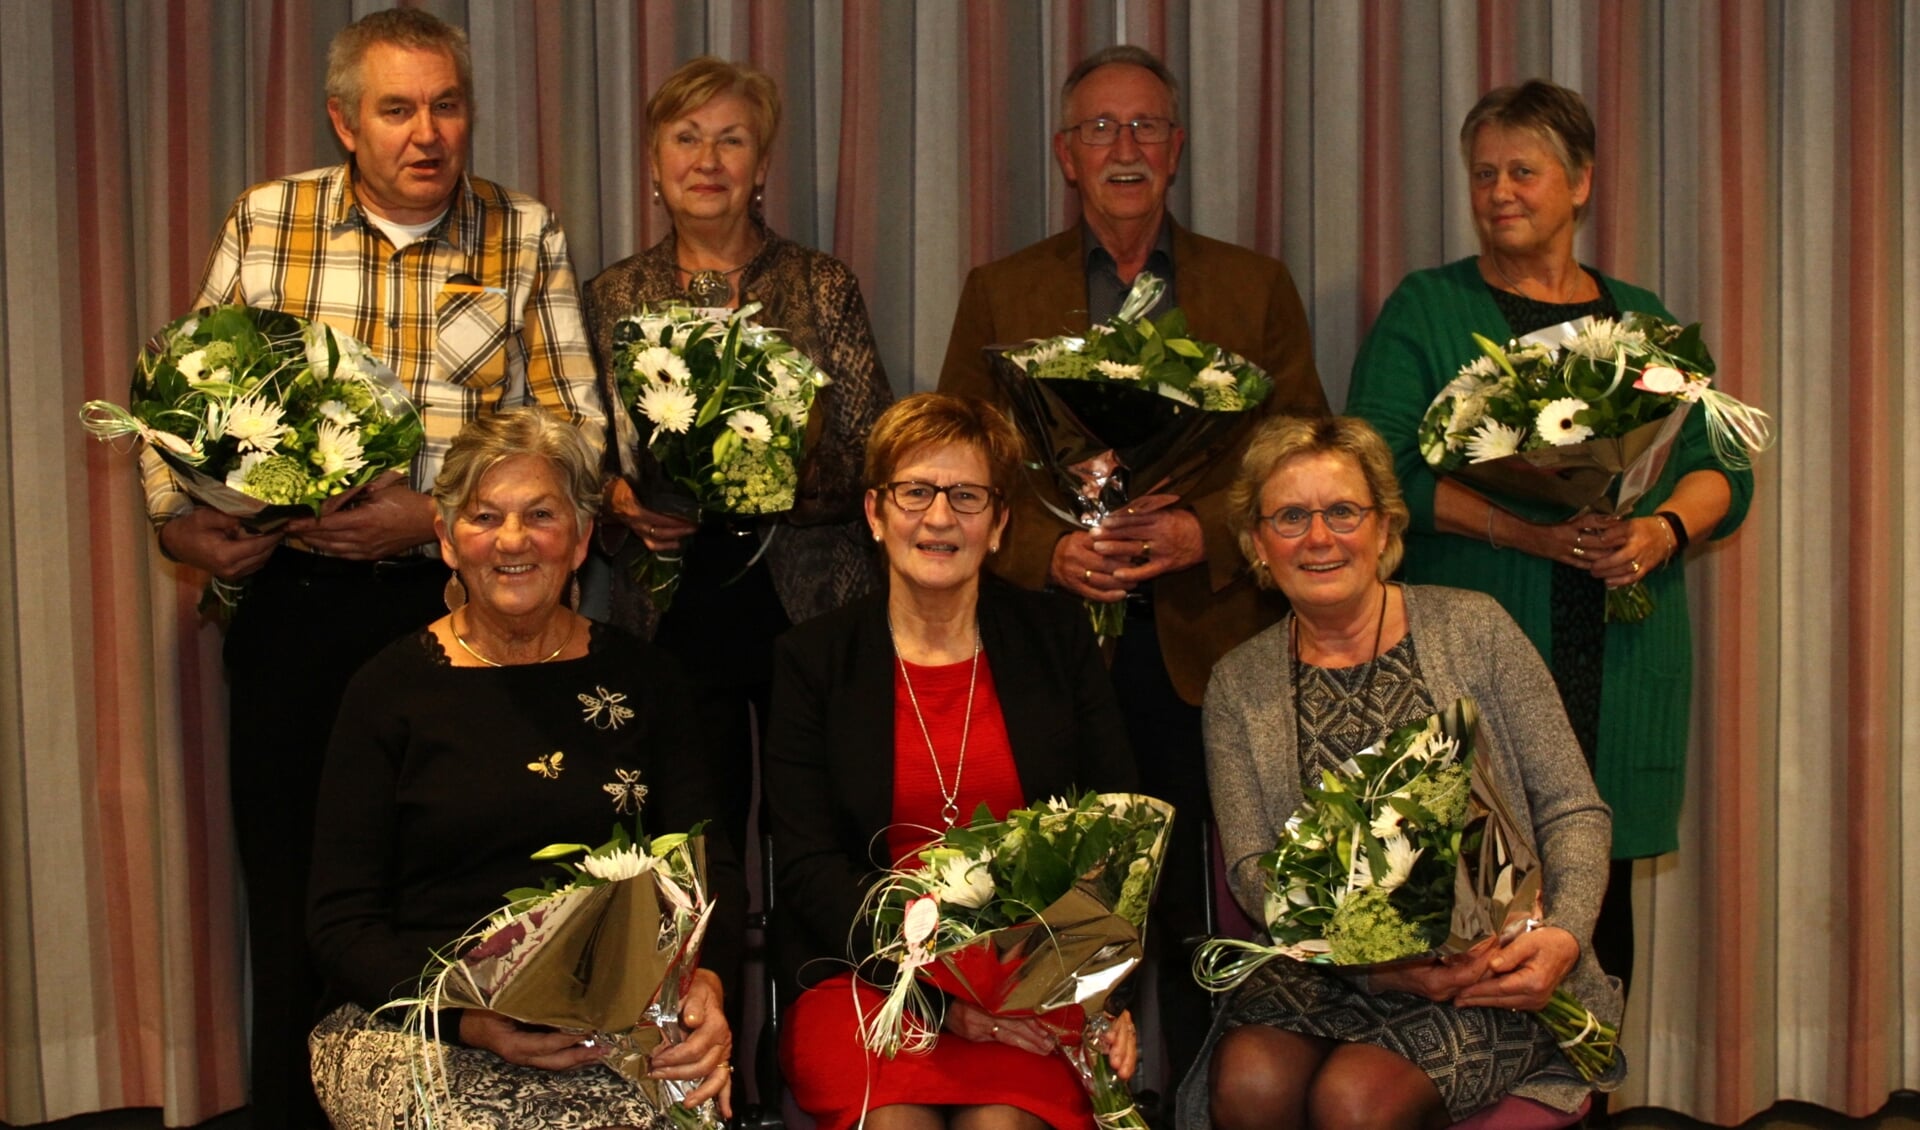 Op de foto de jubilarissen v.l.n.r. Peter Stitselaar (45 jr.) Corry van Maanen (25 jr.), Kees van Maanen (25 jr.), Janneke van de Kamp (40 jr.), zittend v.l.n.r. Petra van de Kamp (45 jr.), Eefje van Meerveld (40 jr.) en Corrie van Norden (40 jr.).